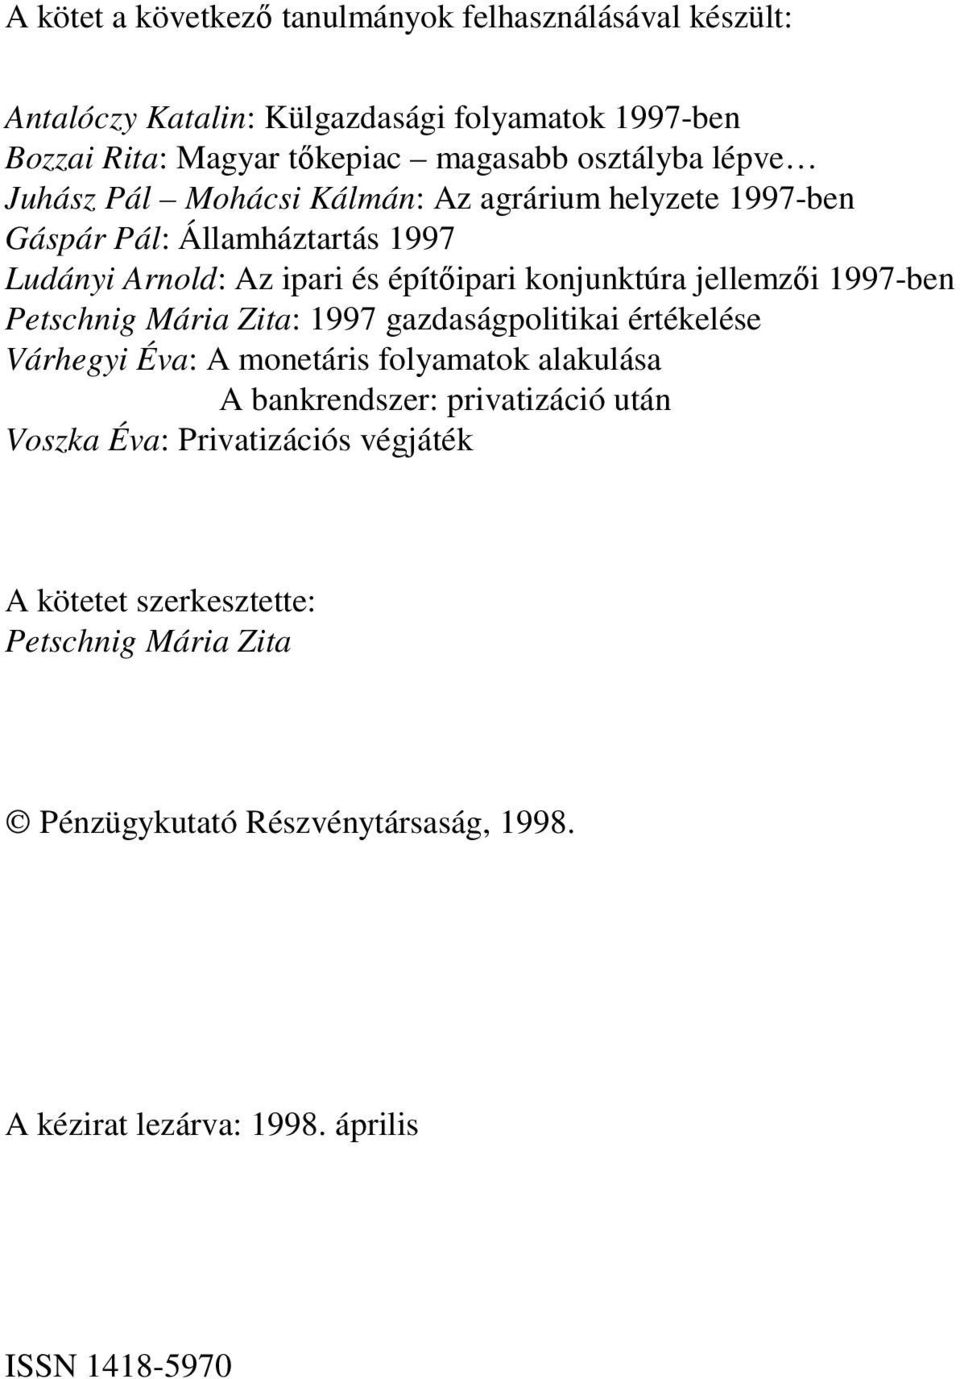 jellemzıi 1997-ben Petschnig Mária Zita: 1997 gazdaságpolitikai értékelése Várhegyi Éva: A monetáris folyamatok alakulása A bankrendszer: privatizáció után